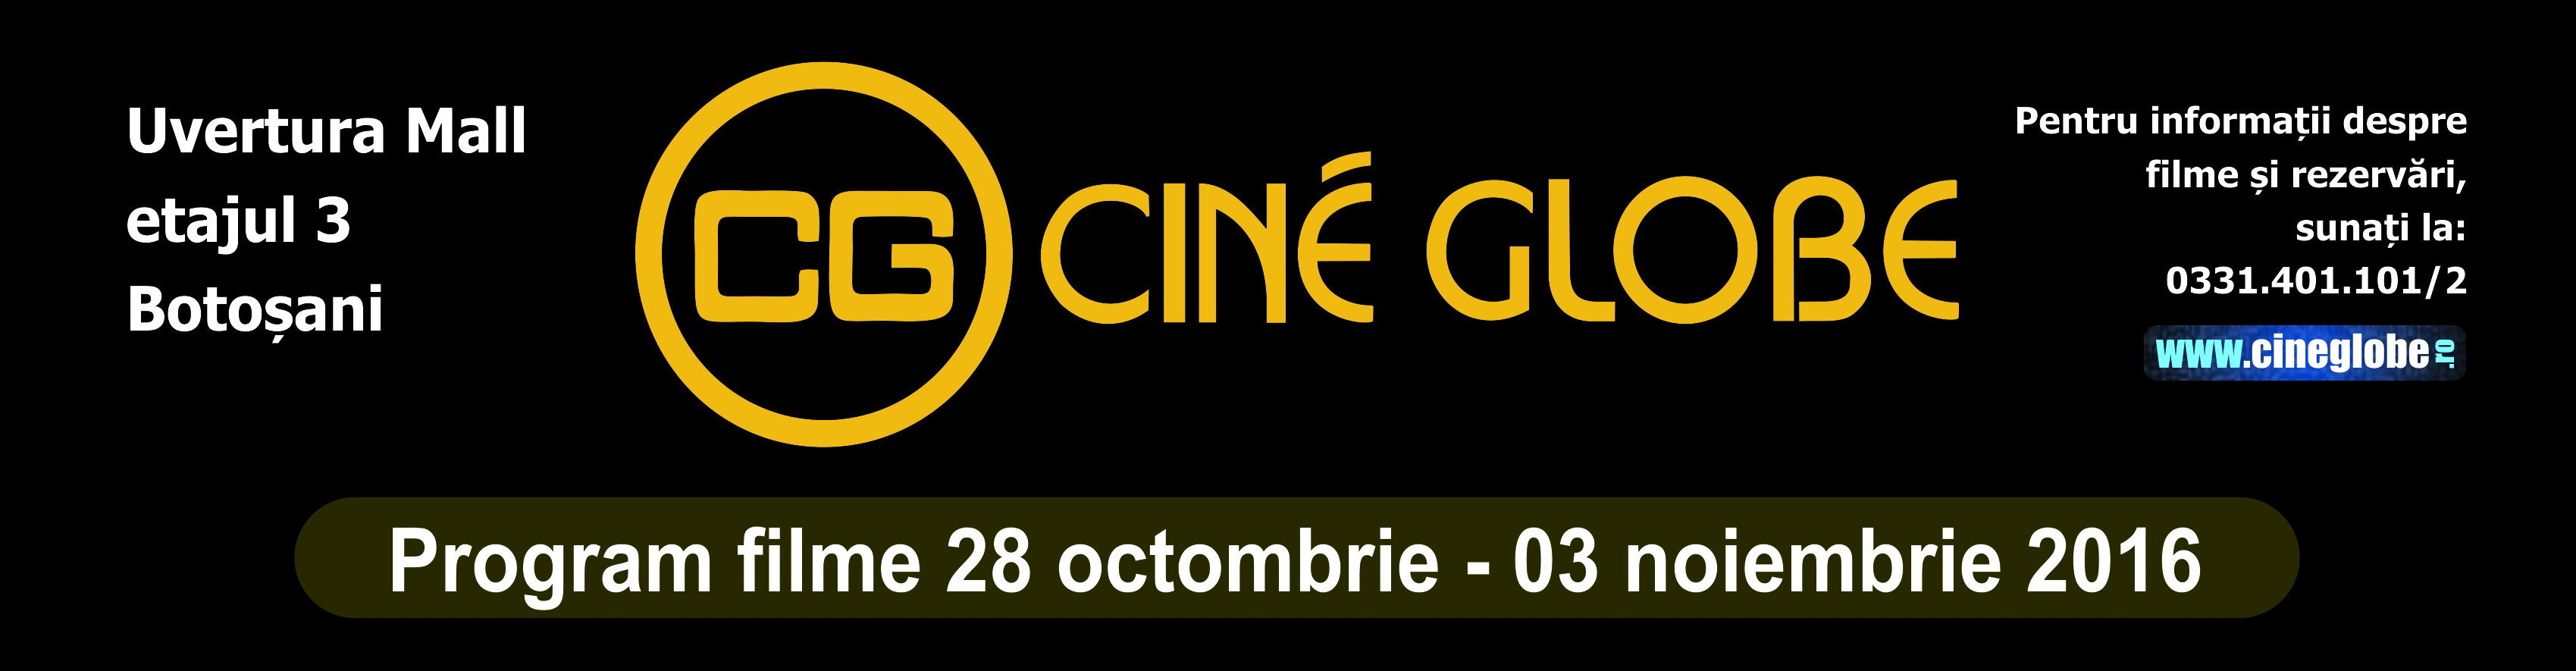 alien Incentive Nautical Programul săptămânii la Cine Globe 28 octombrie-03 noiembrie 2016 | Suceava  News Online